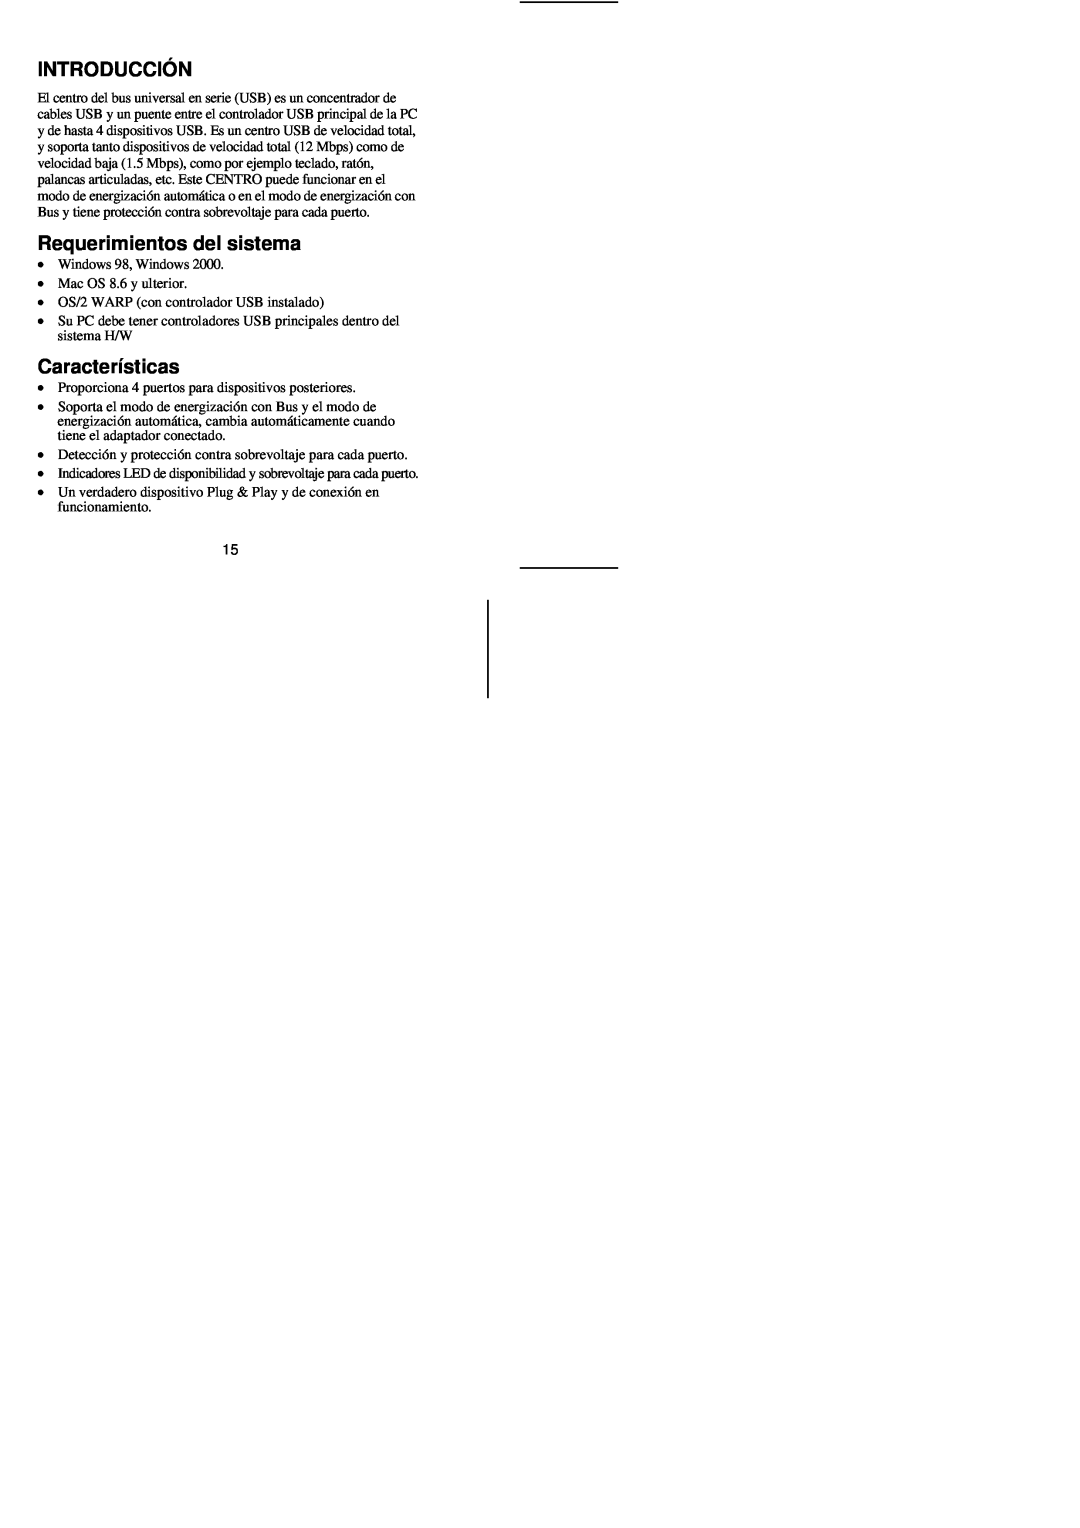 Tripp Lite U205-004-R user manual Introducció N, Requerimientos del sistema, Características 